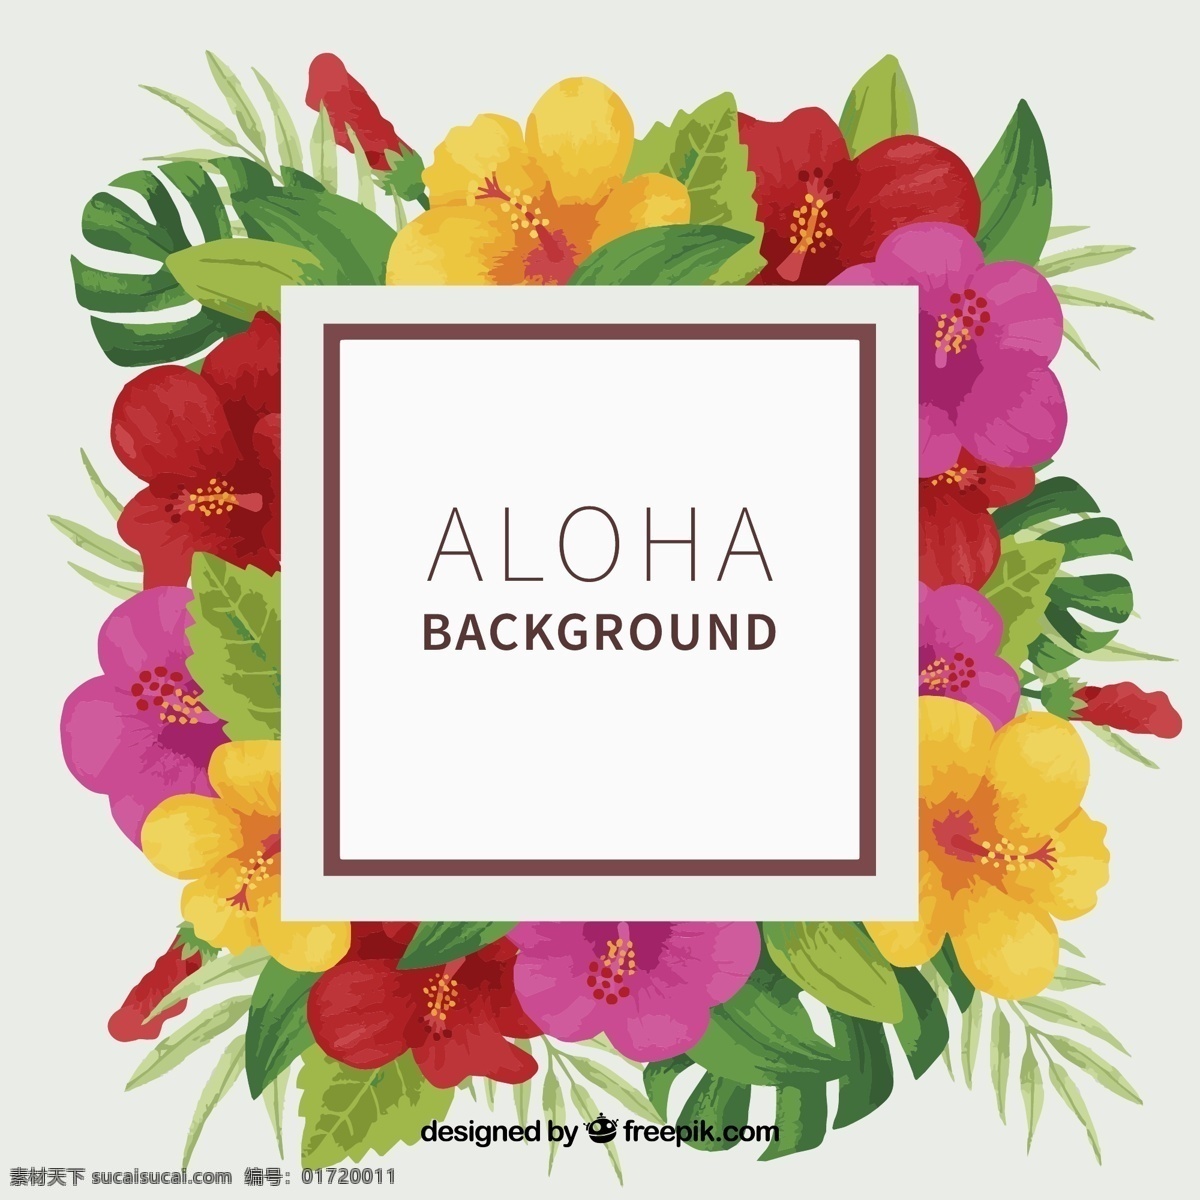 aloha 背景 热带 水彩 花卉 夏季 花卉背景 水彩花卉 水彩背景 树叶 夏威夷 季节 热带花卉 背景花卉 异国情调